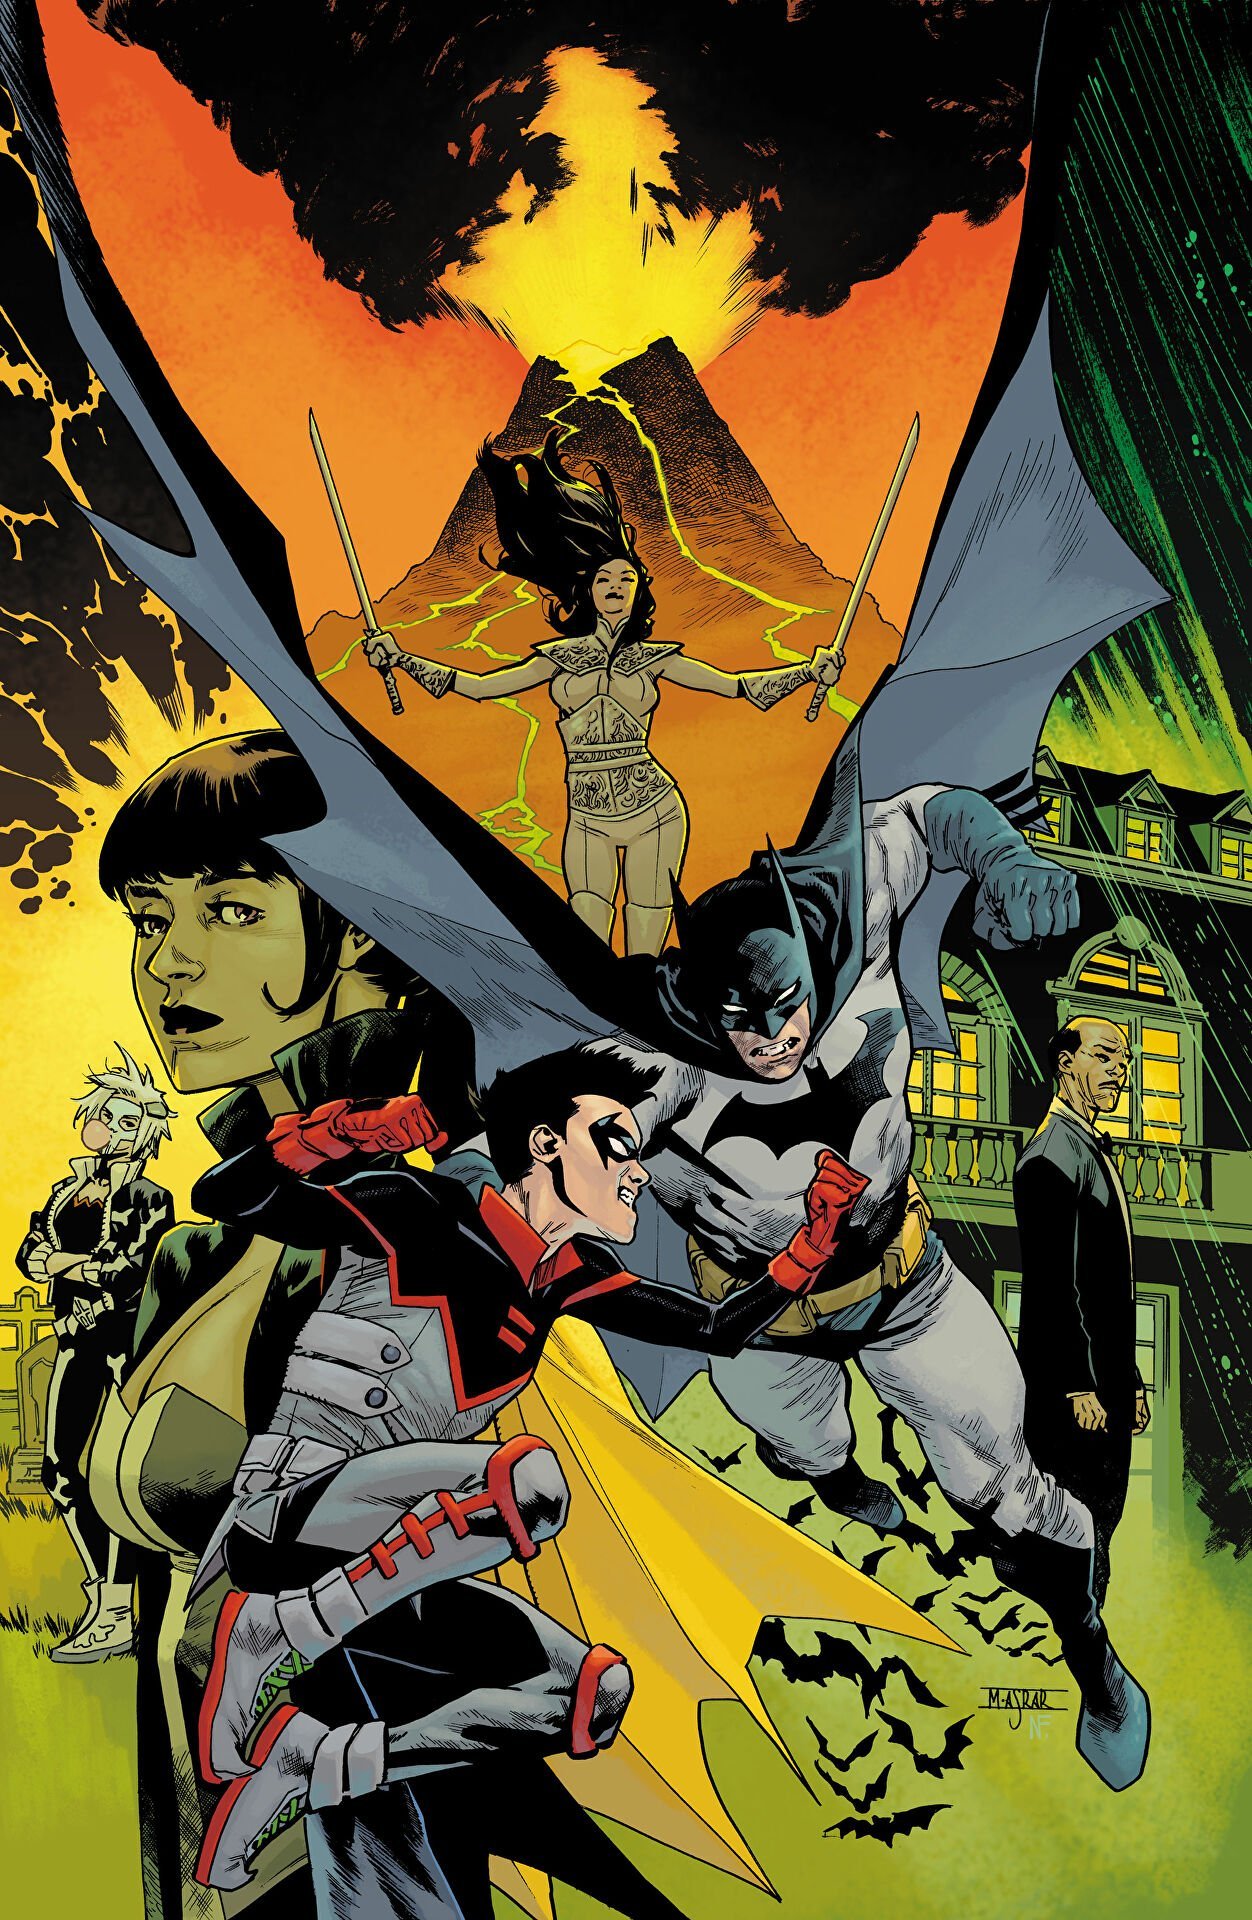 Cover di Batman vs Robin 1 di Mahmud Asrar, primo capitolo dell'evento che mette Bruce contro Damian